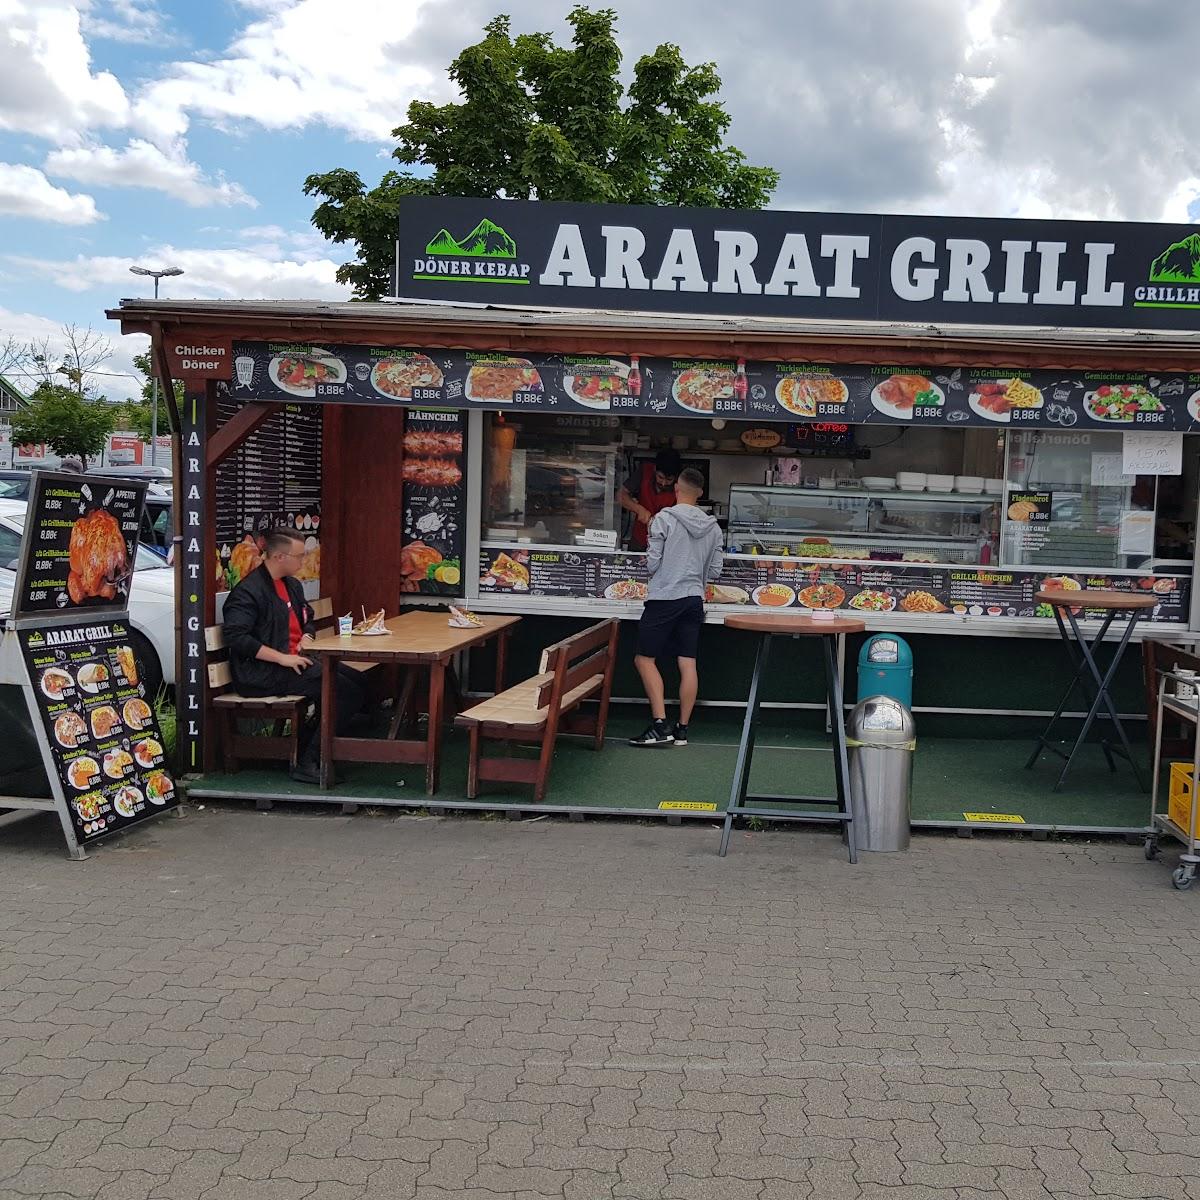 Restaurant "ARARAT GRILL" in Fürstenwalde-Spree